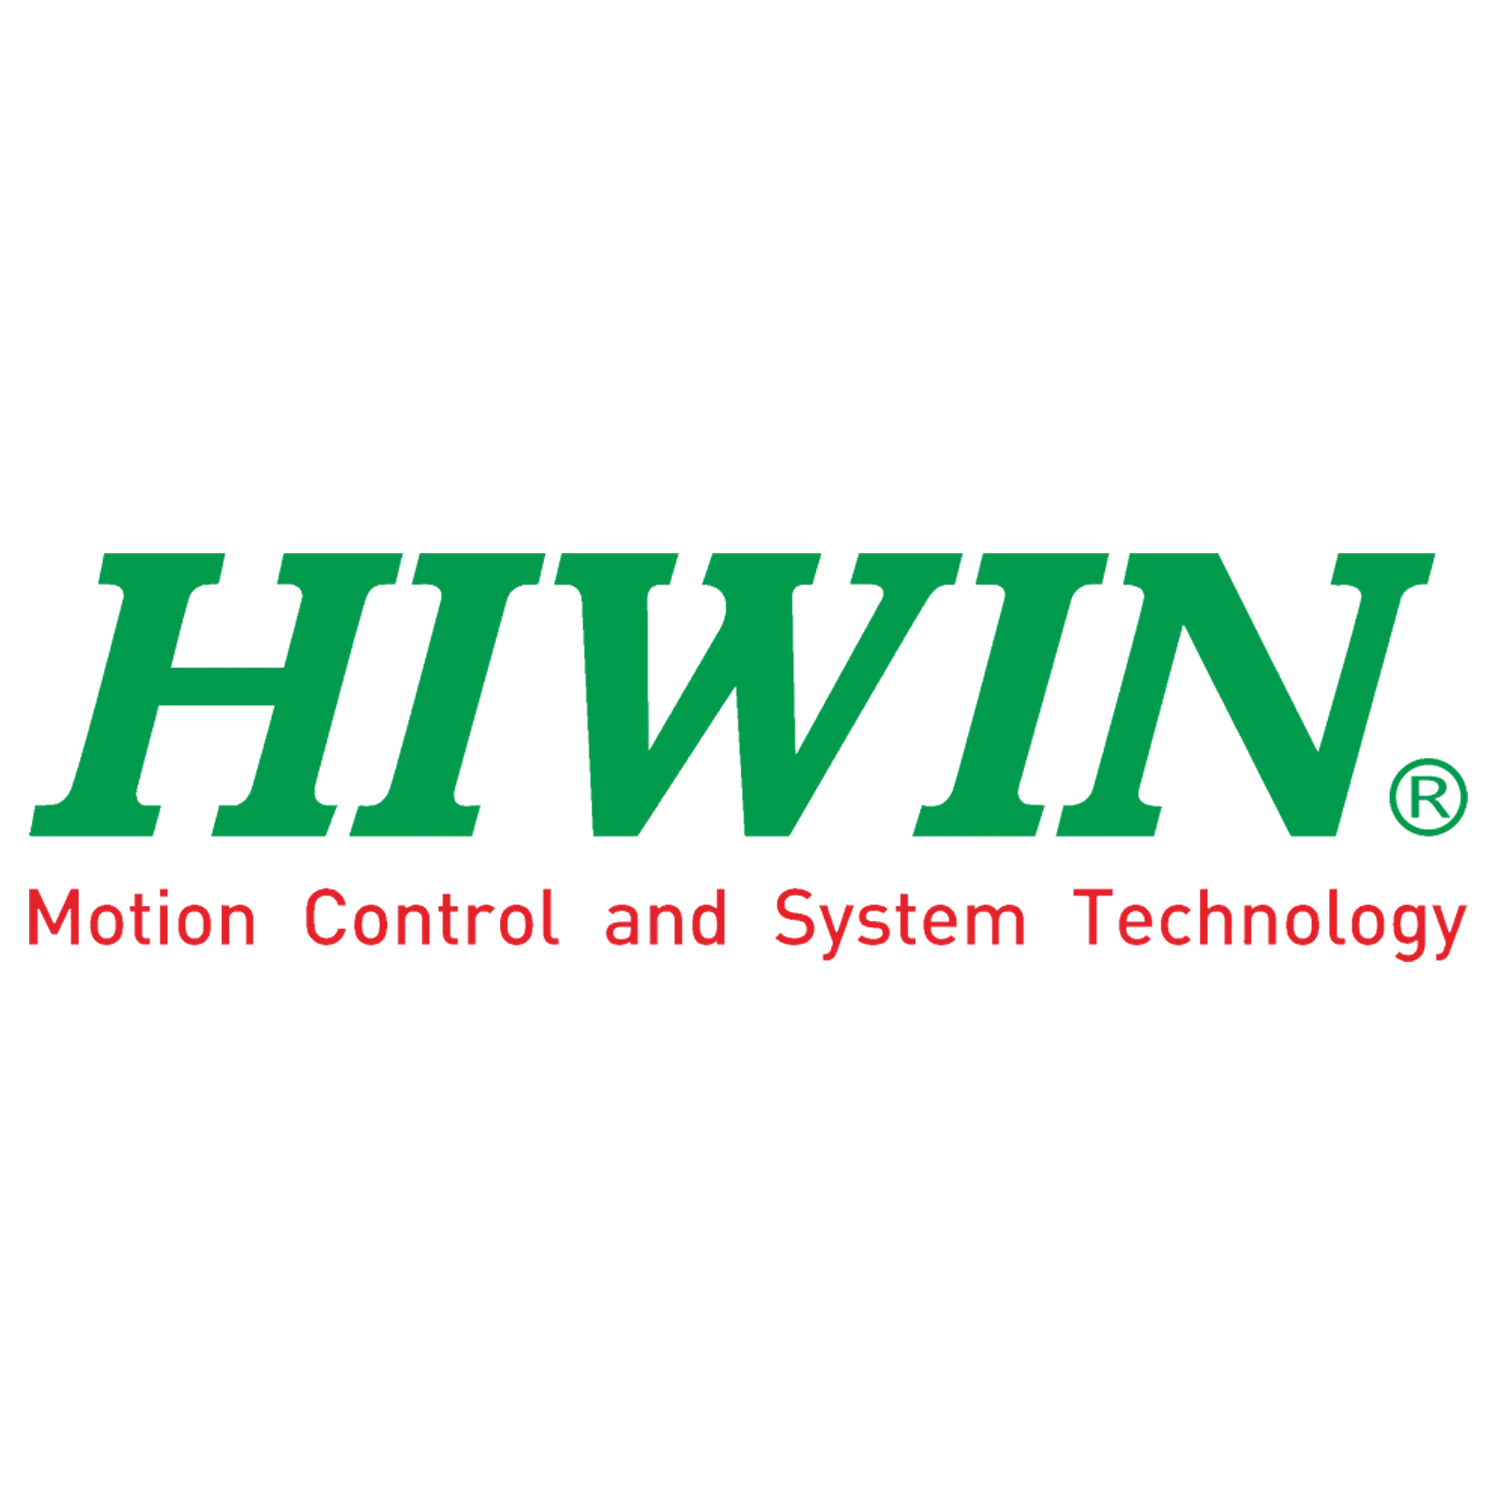 Энкодерный кабель серводвигателя  HIWIN HVE23ACB05MB